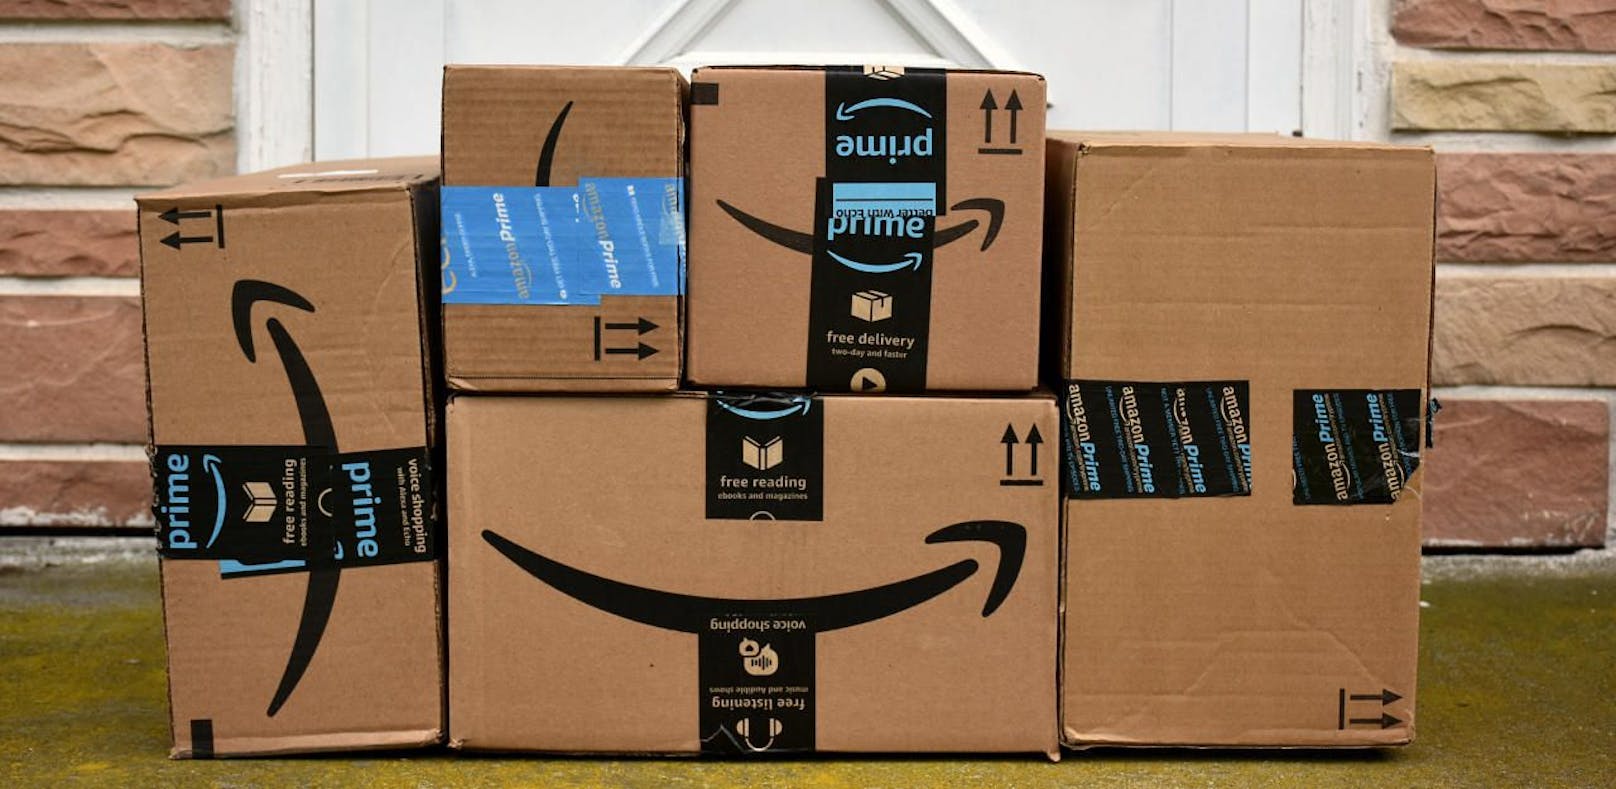 Der Aufbau einer Wiener Zustellung könnte schnellere Amazon-Lieferungen bedeuten.